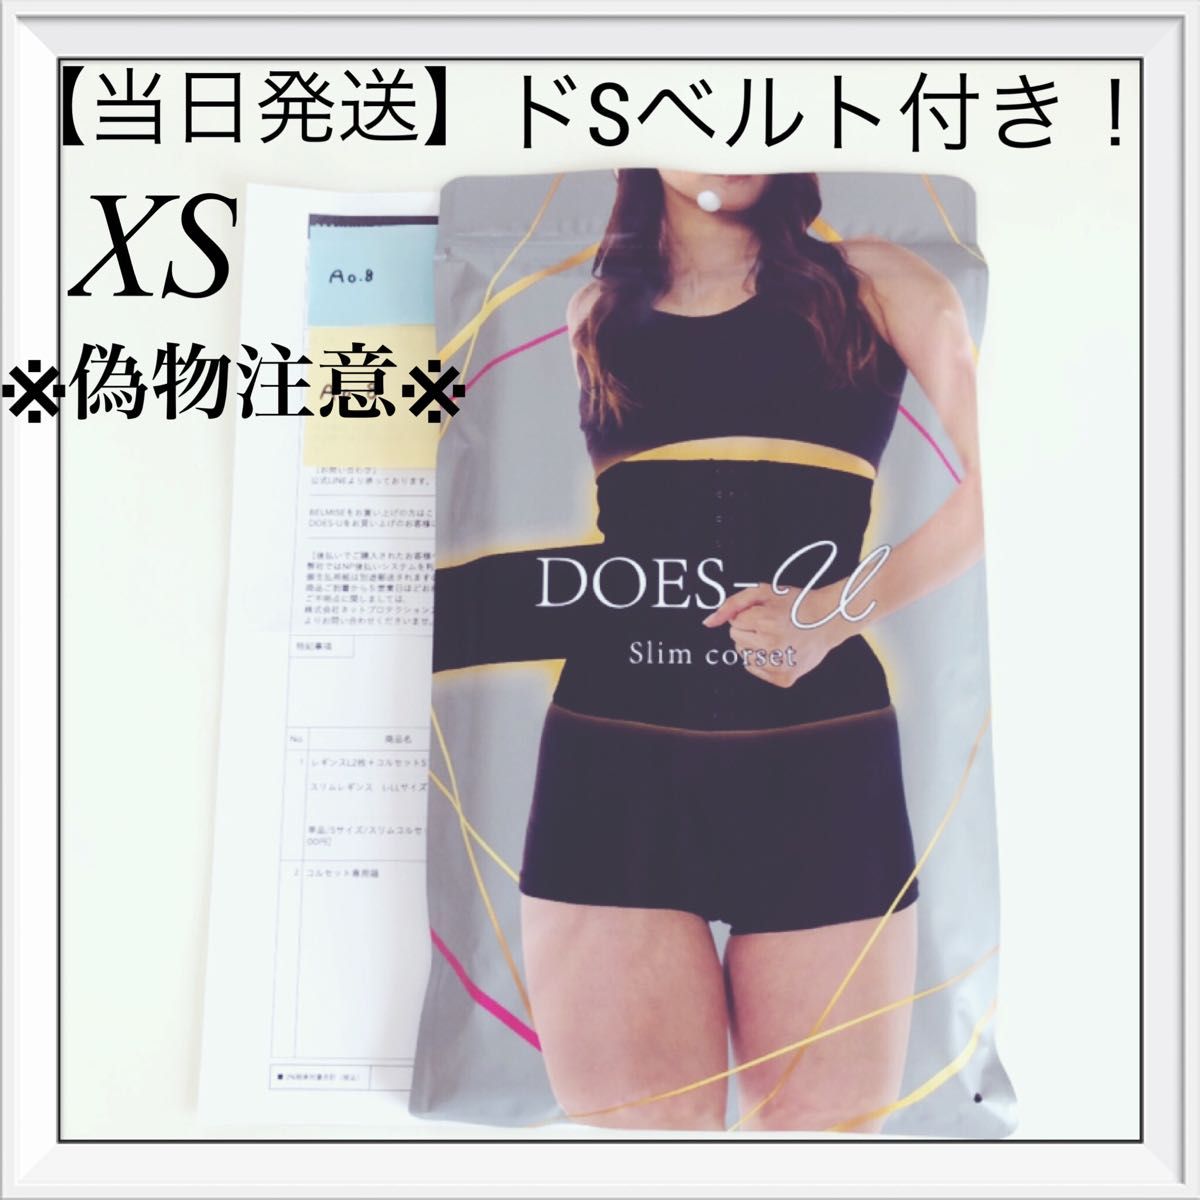 誕生日プレゼント ダズユー スリムコルセット DOES-U Slim corset Mサイズ 新品